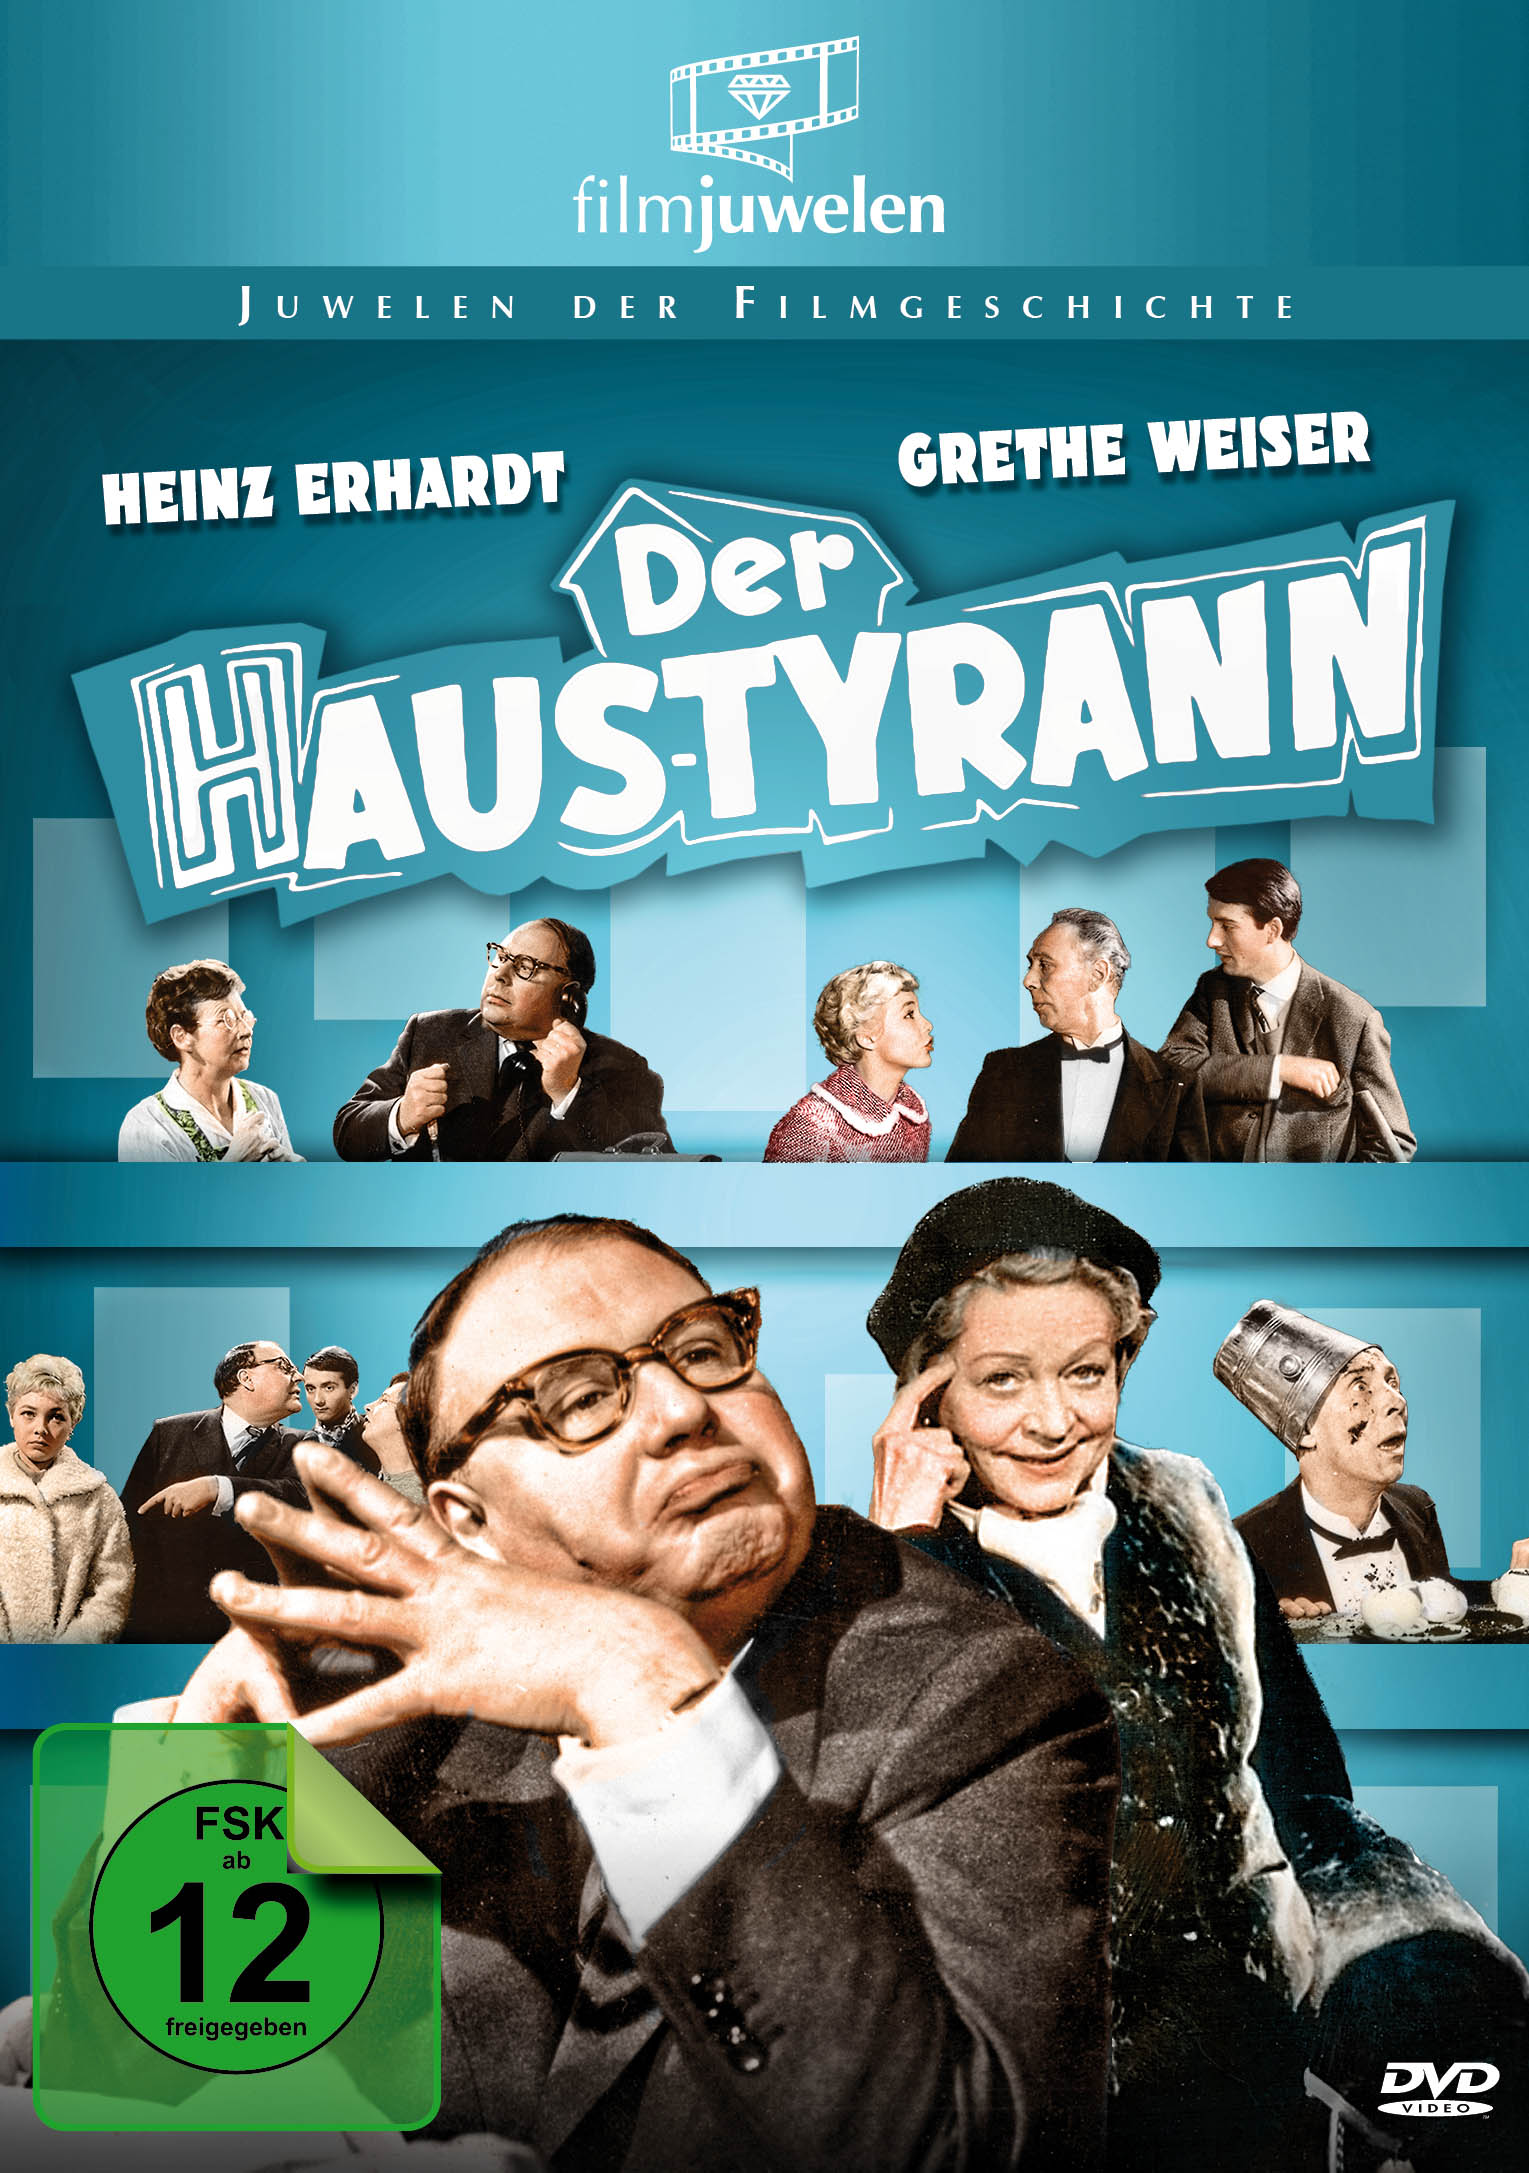 Heinz Haustyrann Der - Erhardt DVD